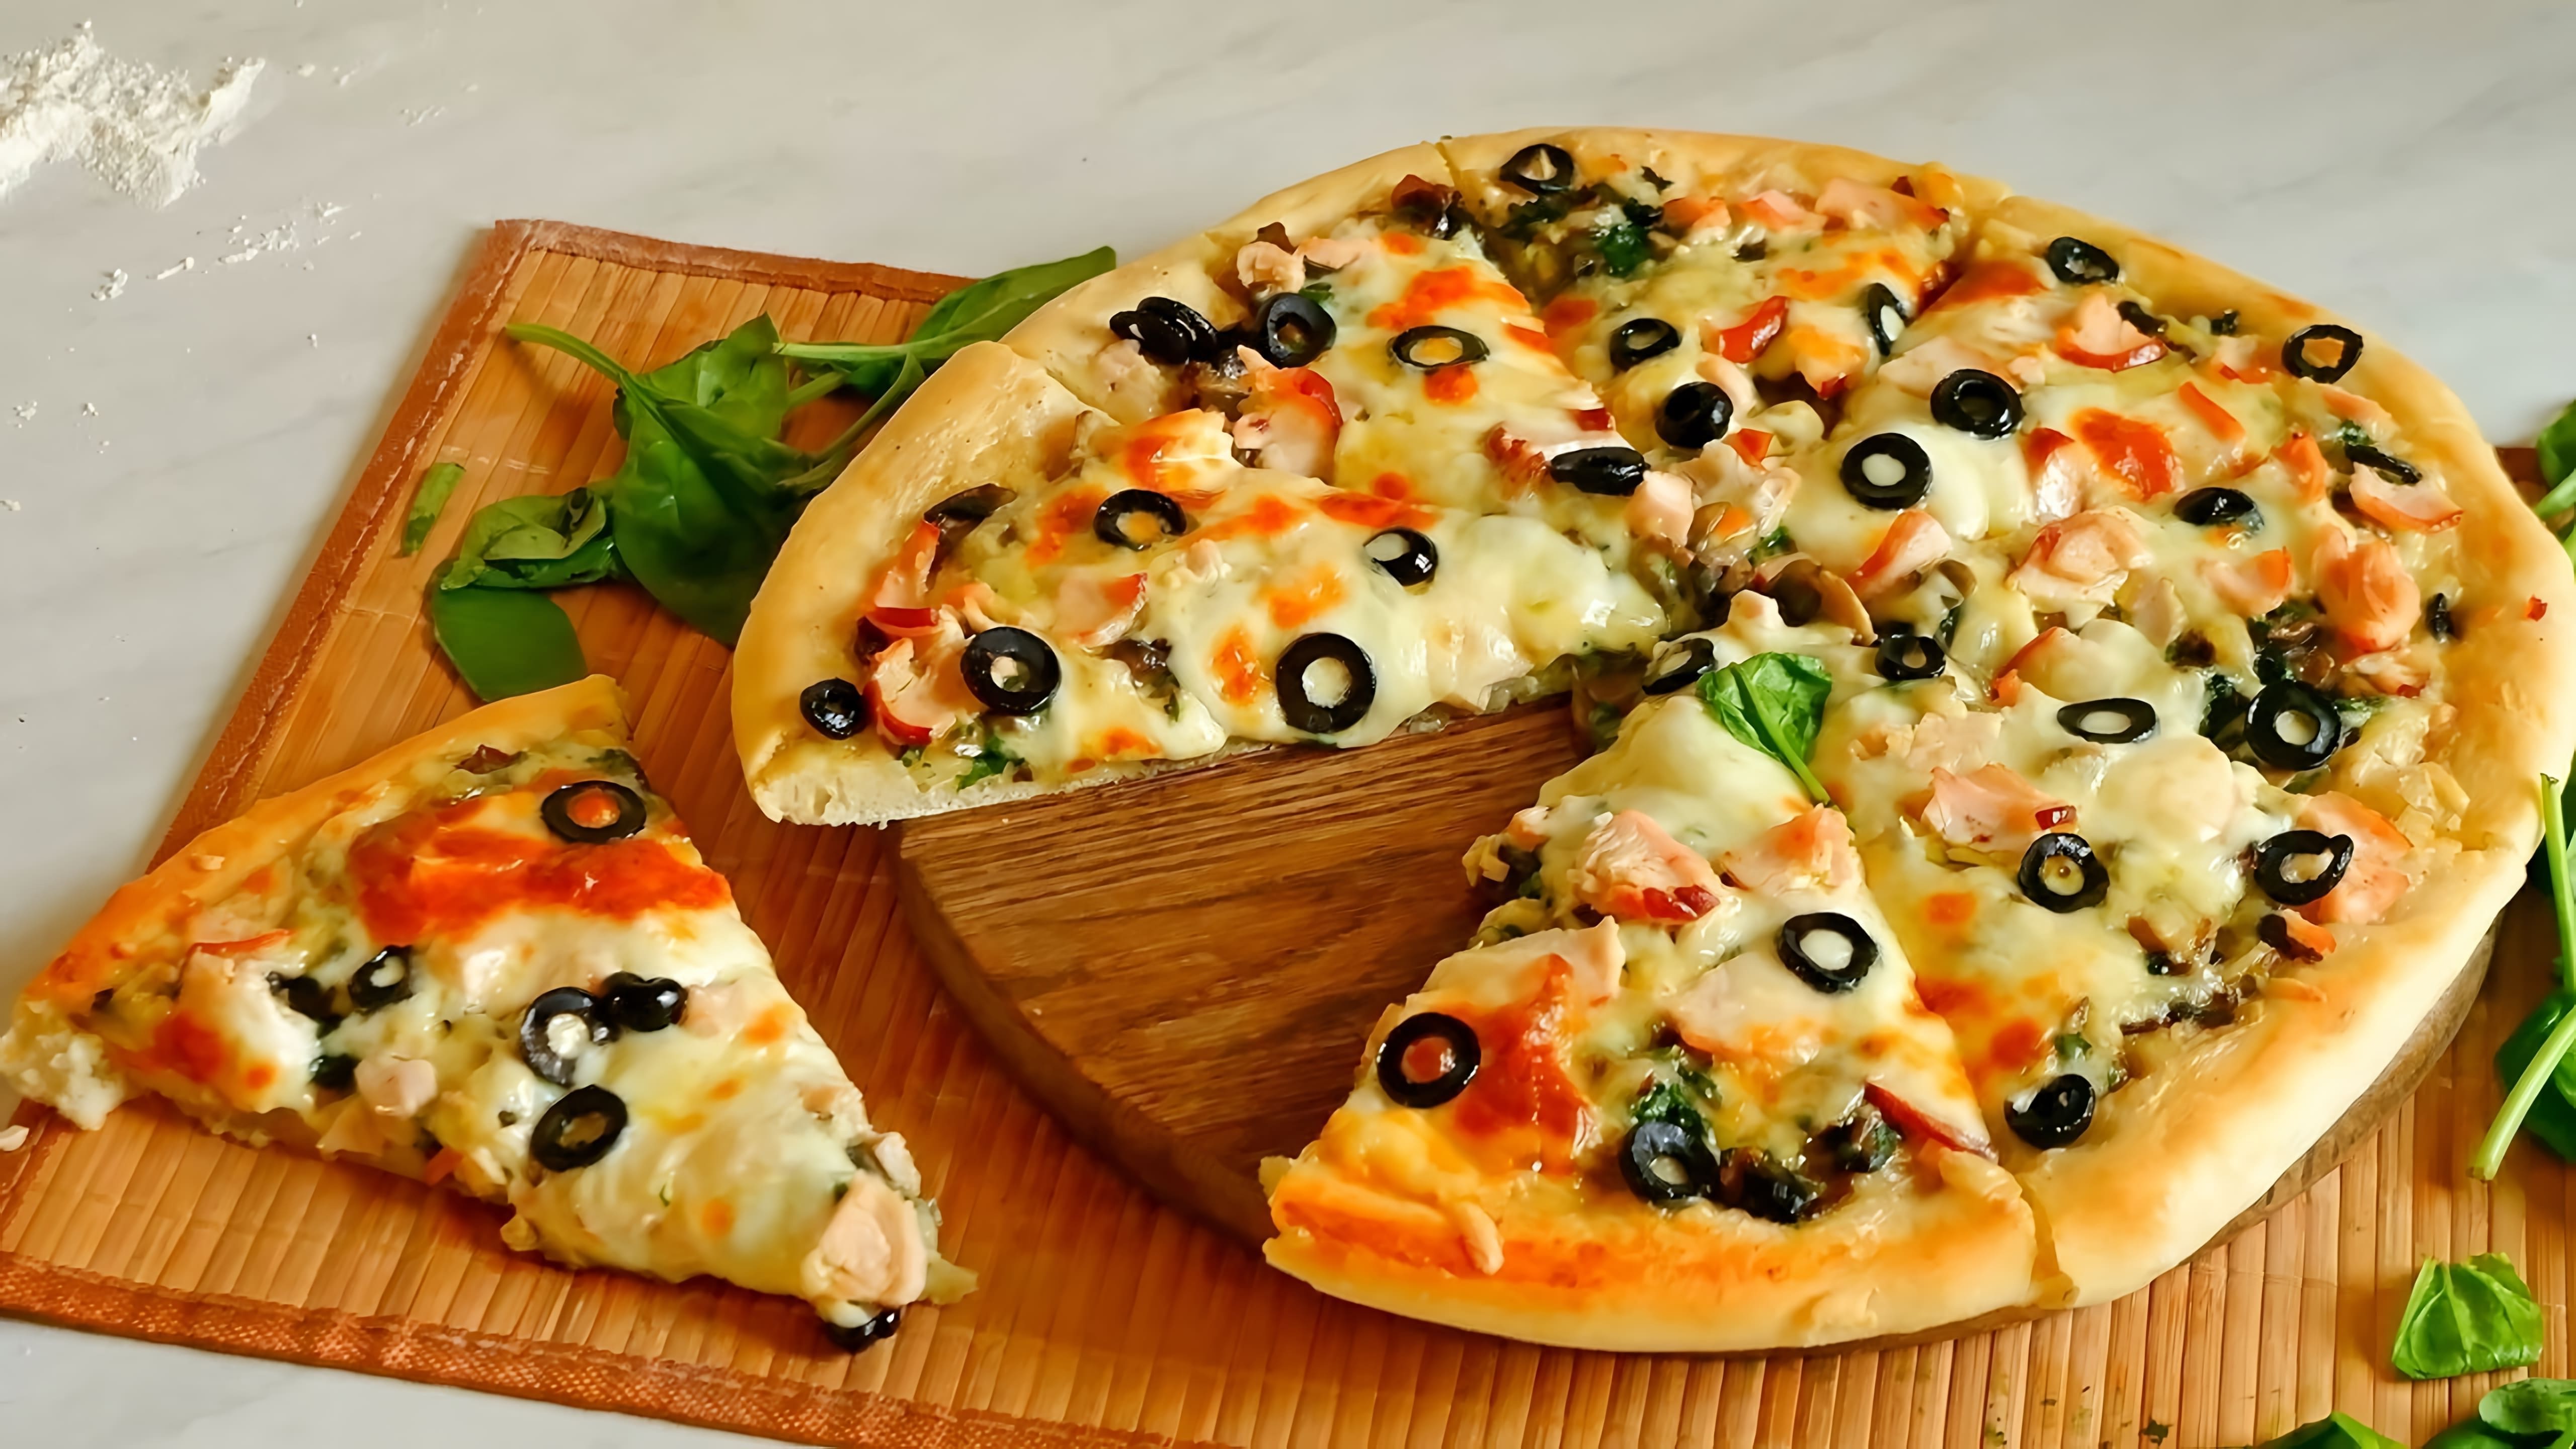 В этом видео демонстрируется рецепт приготовления домашней пиццы на основе белого соуса Бешамель